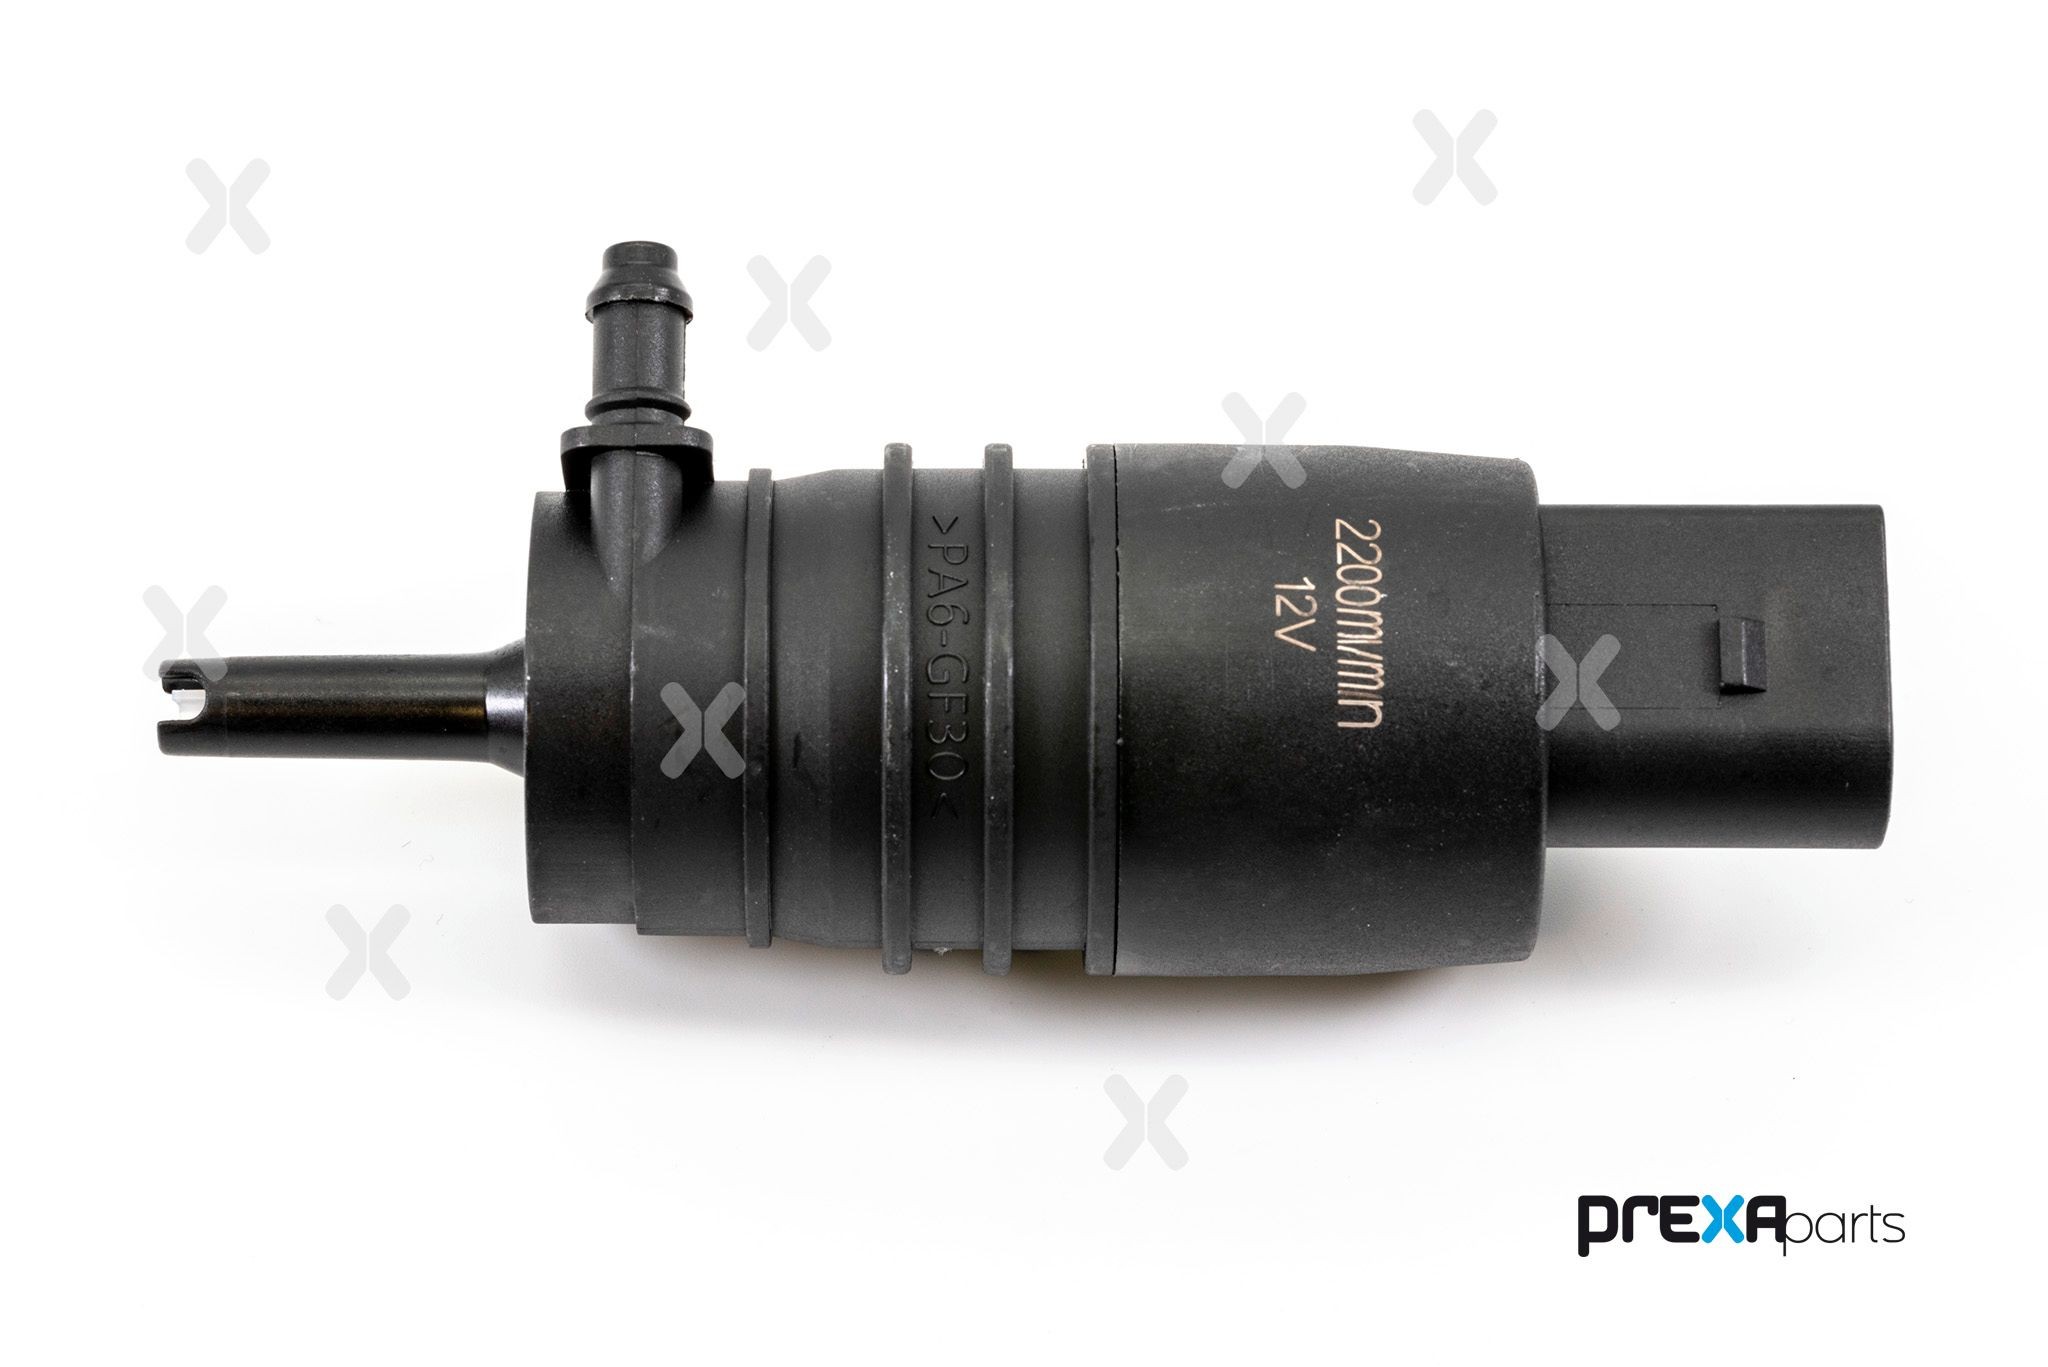 PREXAparts Windscreen Washer Pump P108004